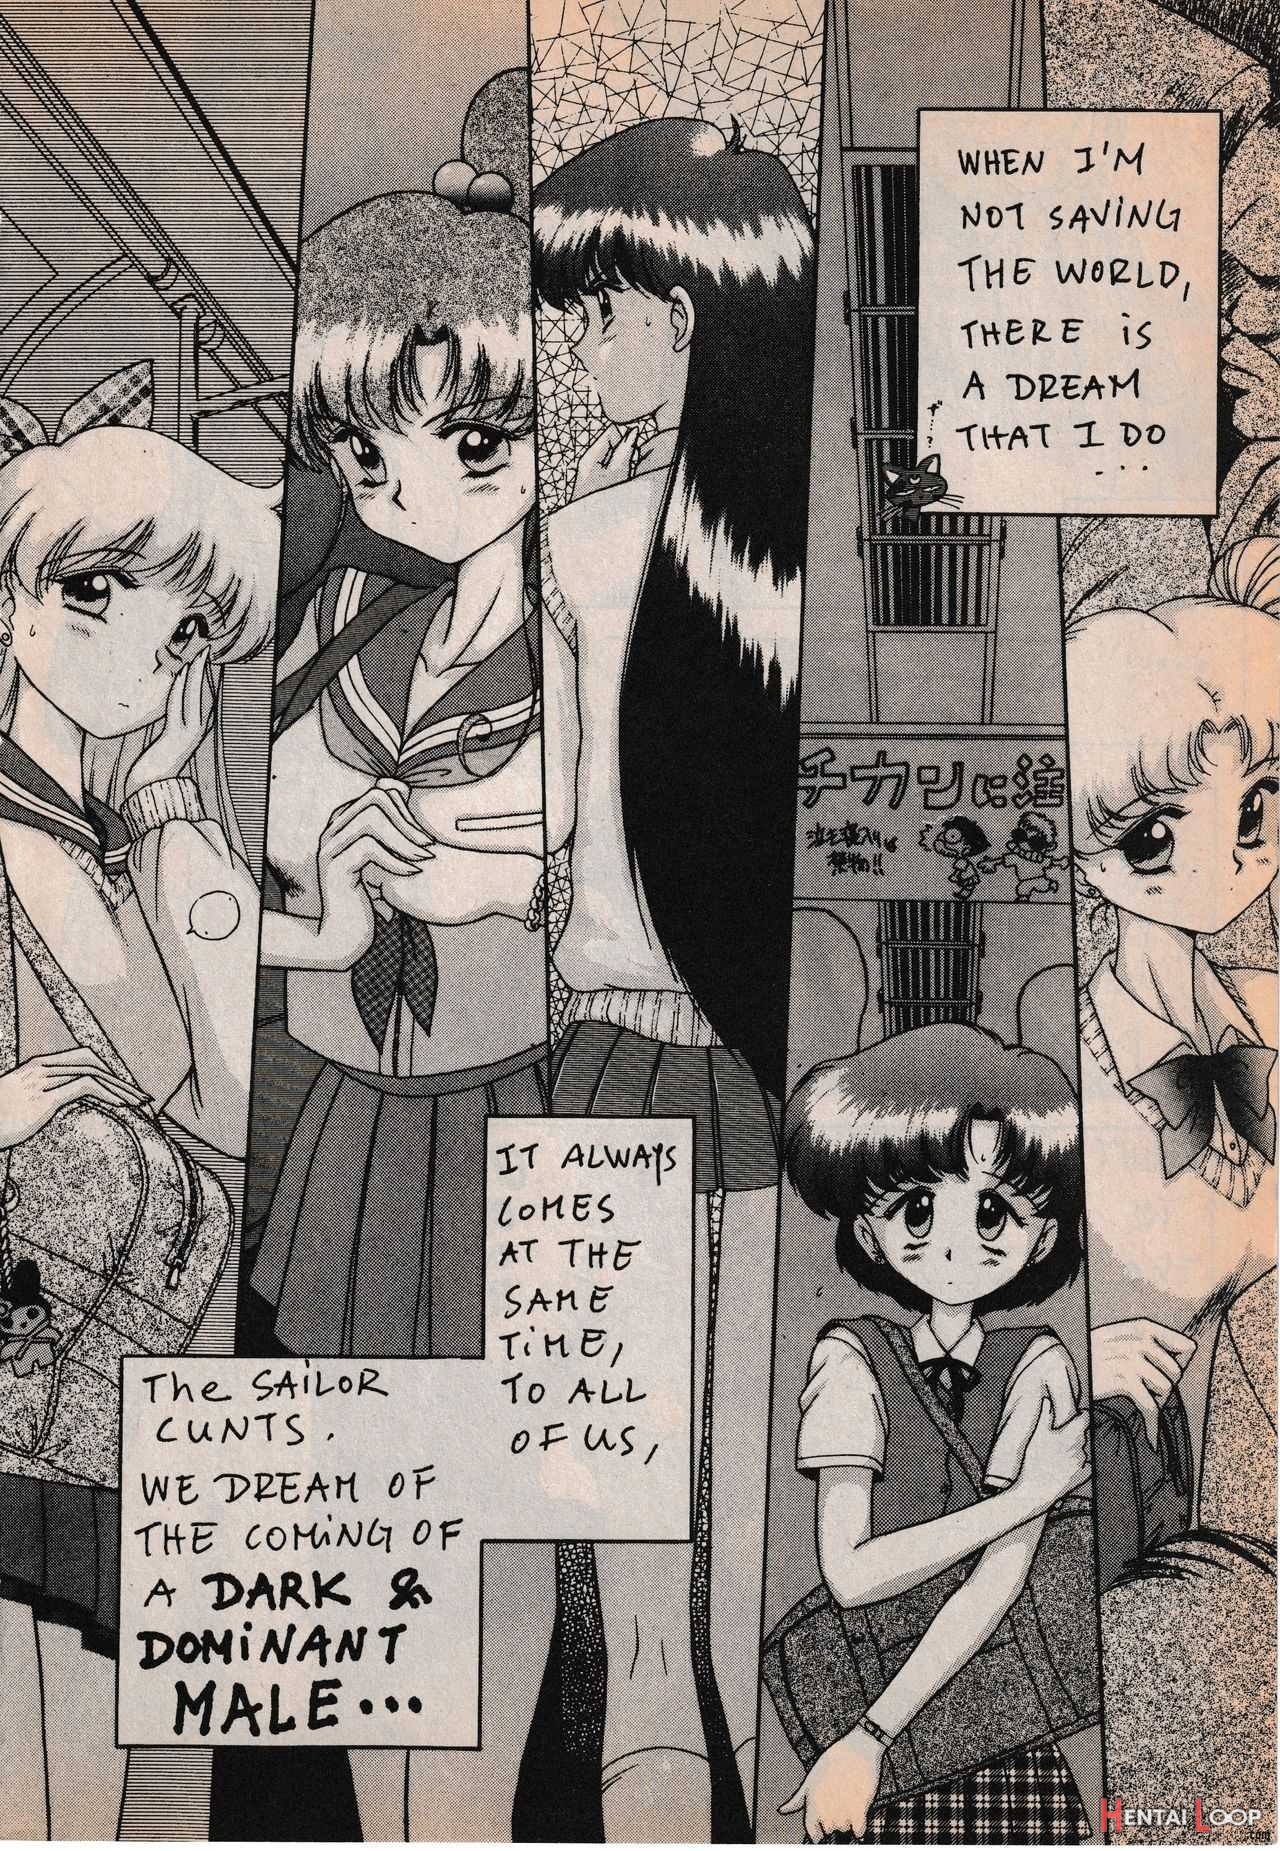 Sailor X Vol. 3 - Sailor X Return page 4